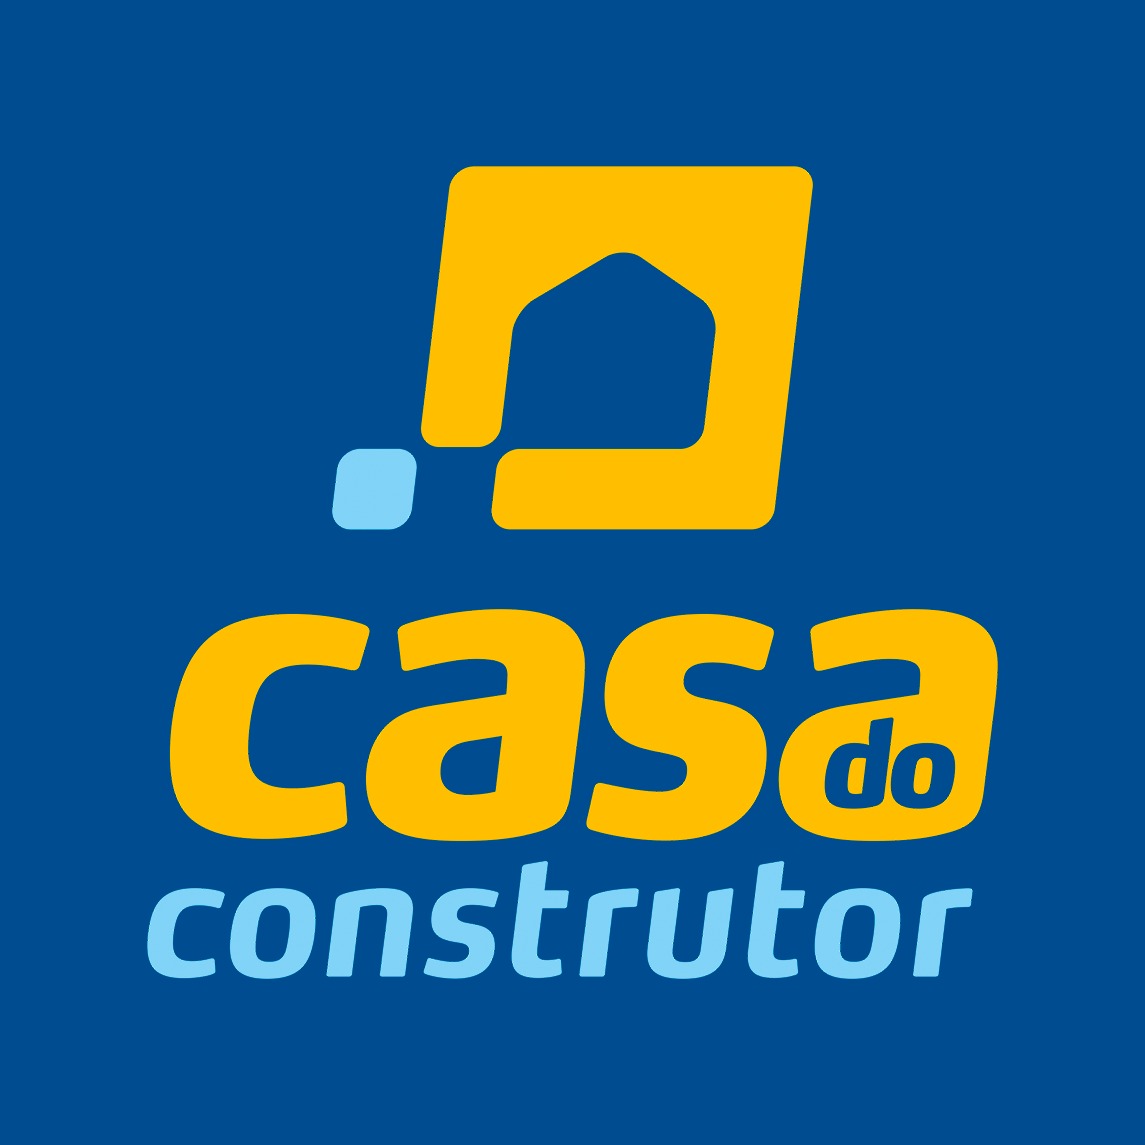 CASA DO CONSTRUTOR aaa